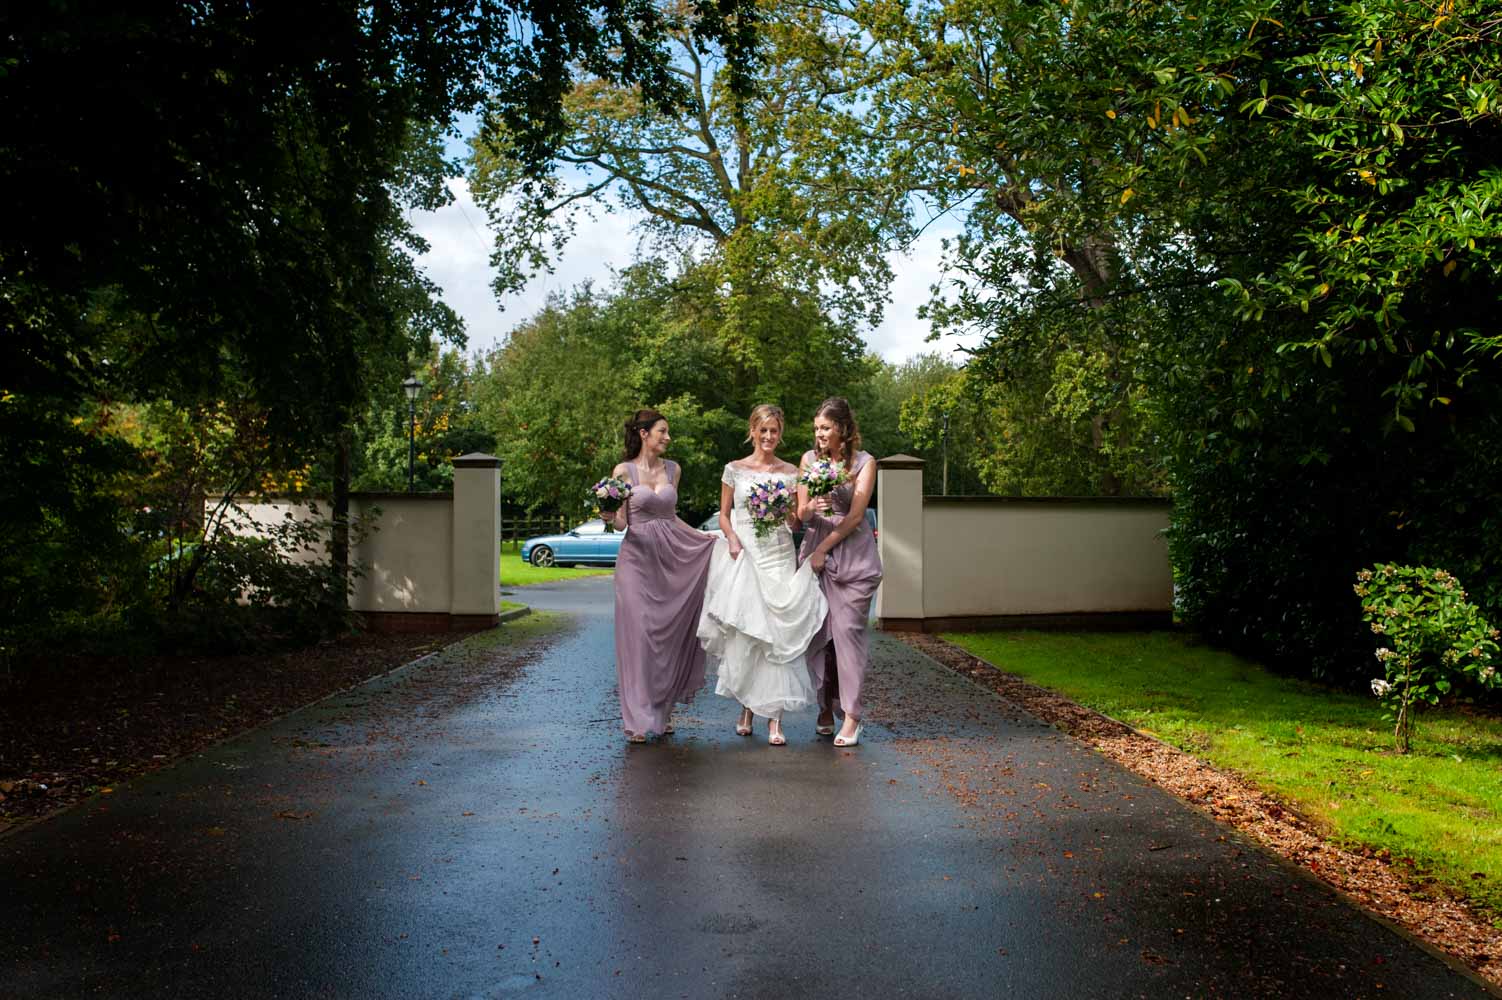 Bride and bridesmaids walking